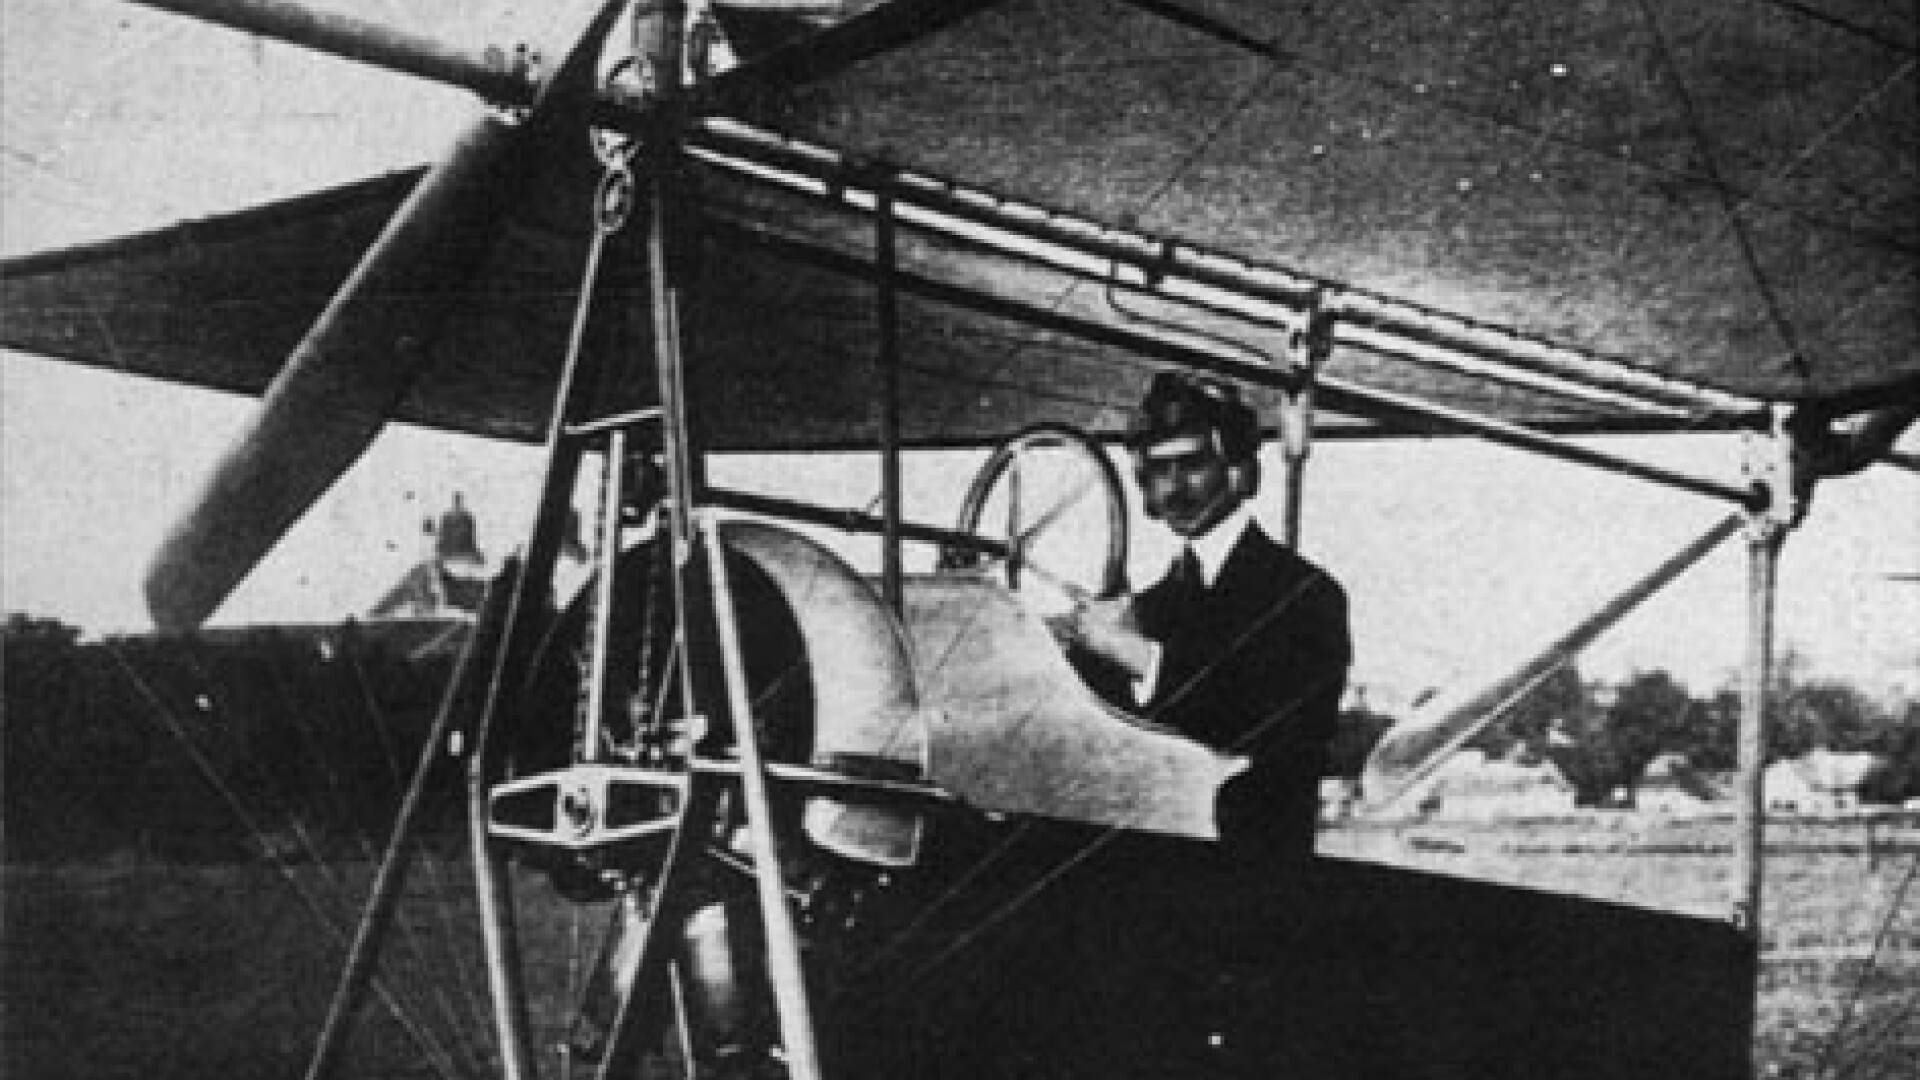 Aurel Vlaicu si avionul sau Vlaicu II